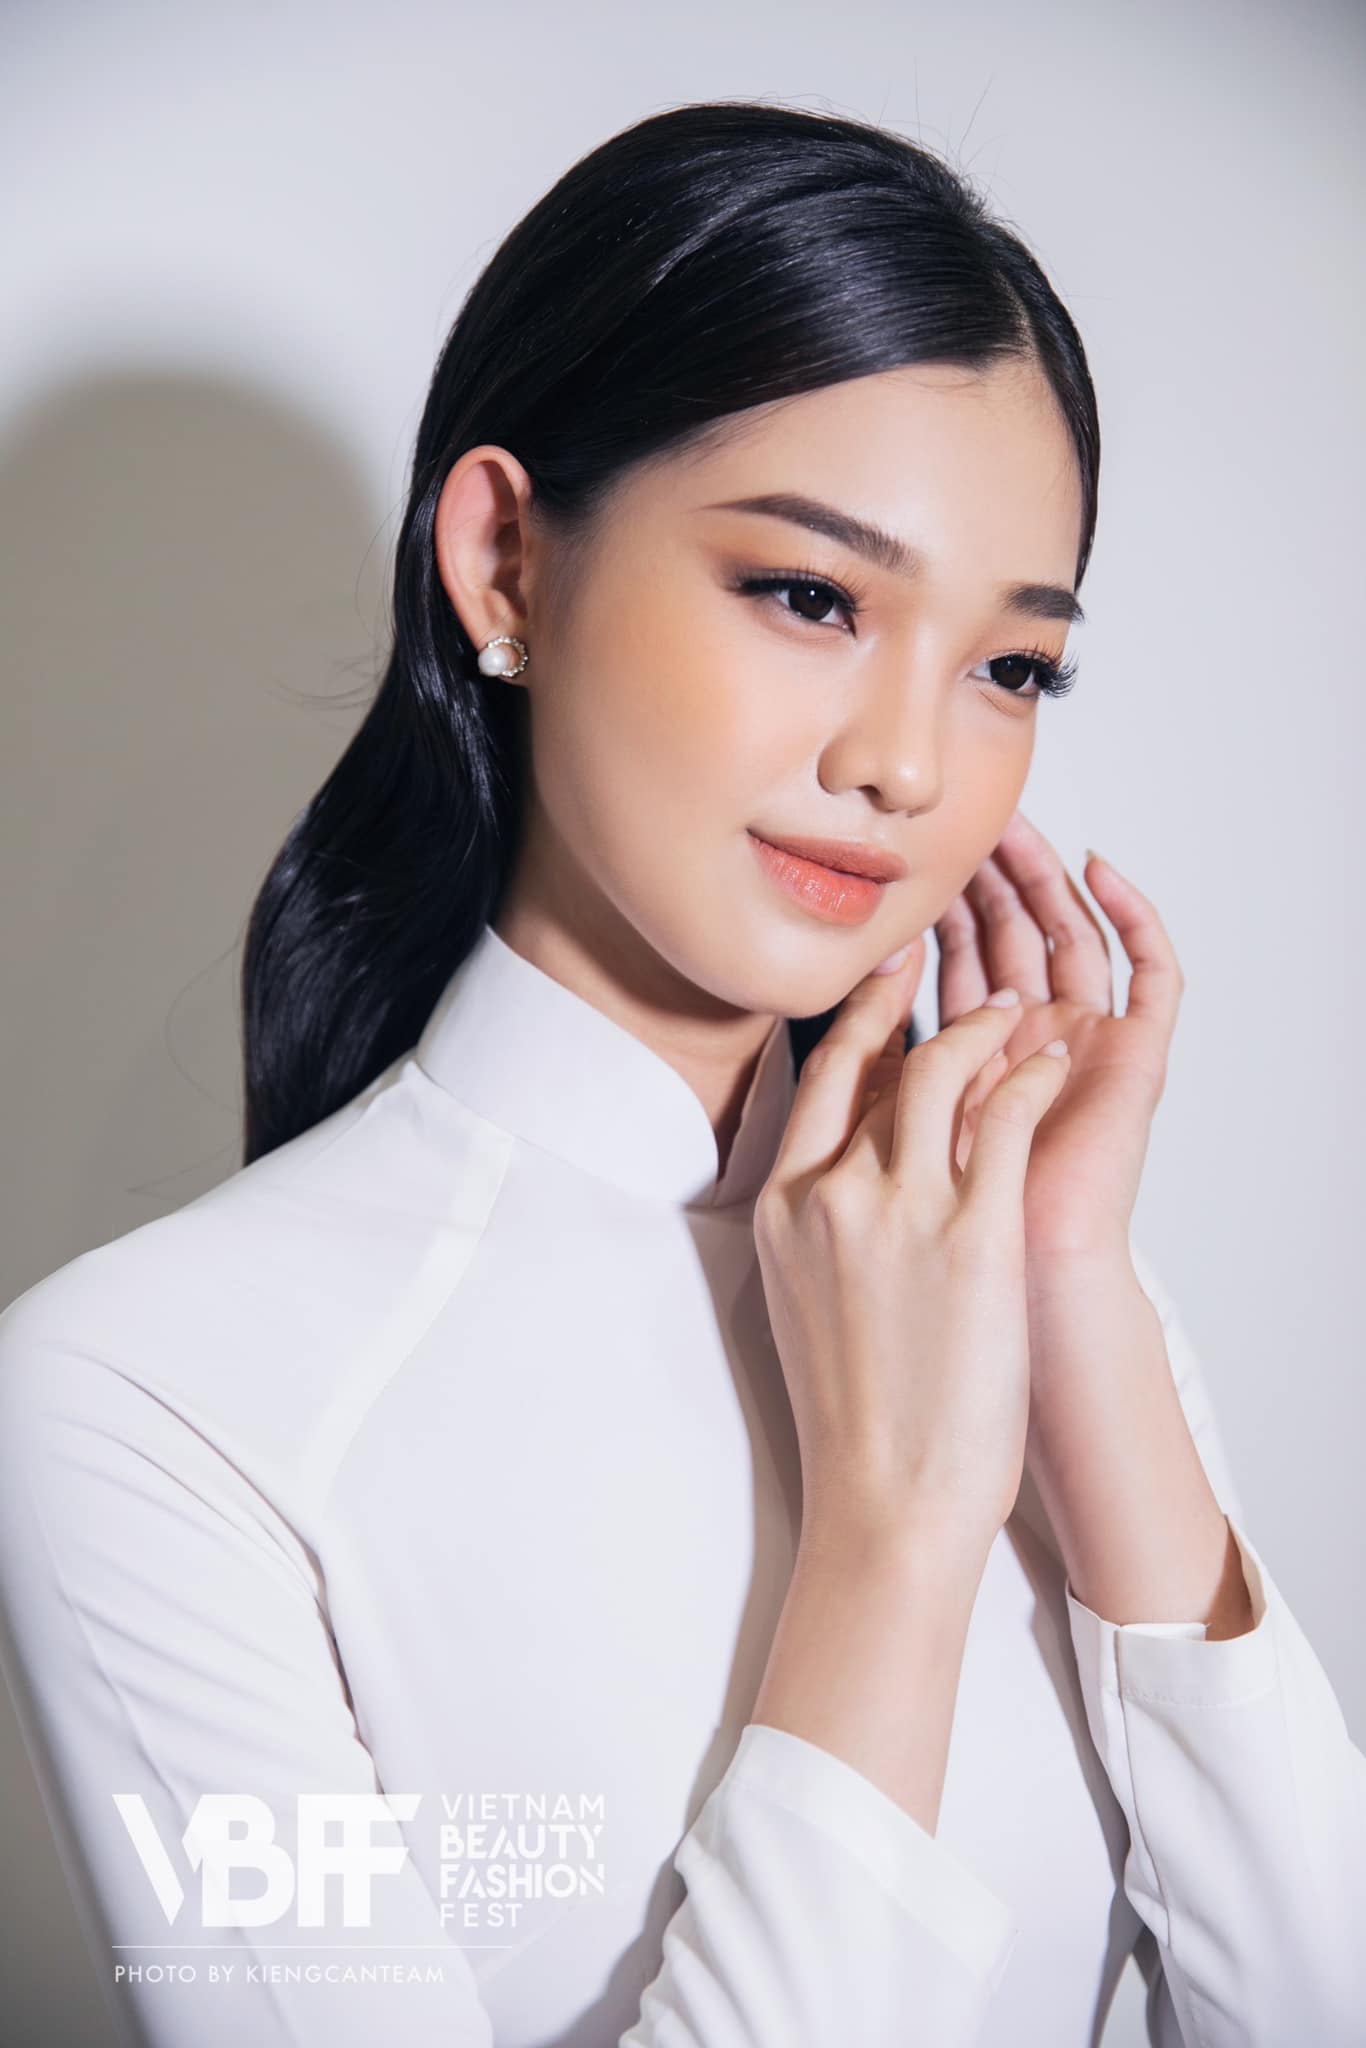 Nhan sắc như Cô Ba Sài Gòn tái thế của Bé Quyên - đối thủ của Nam Em tại Miss World Vietnam - Ảnh 4